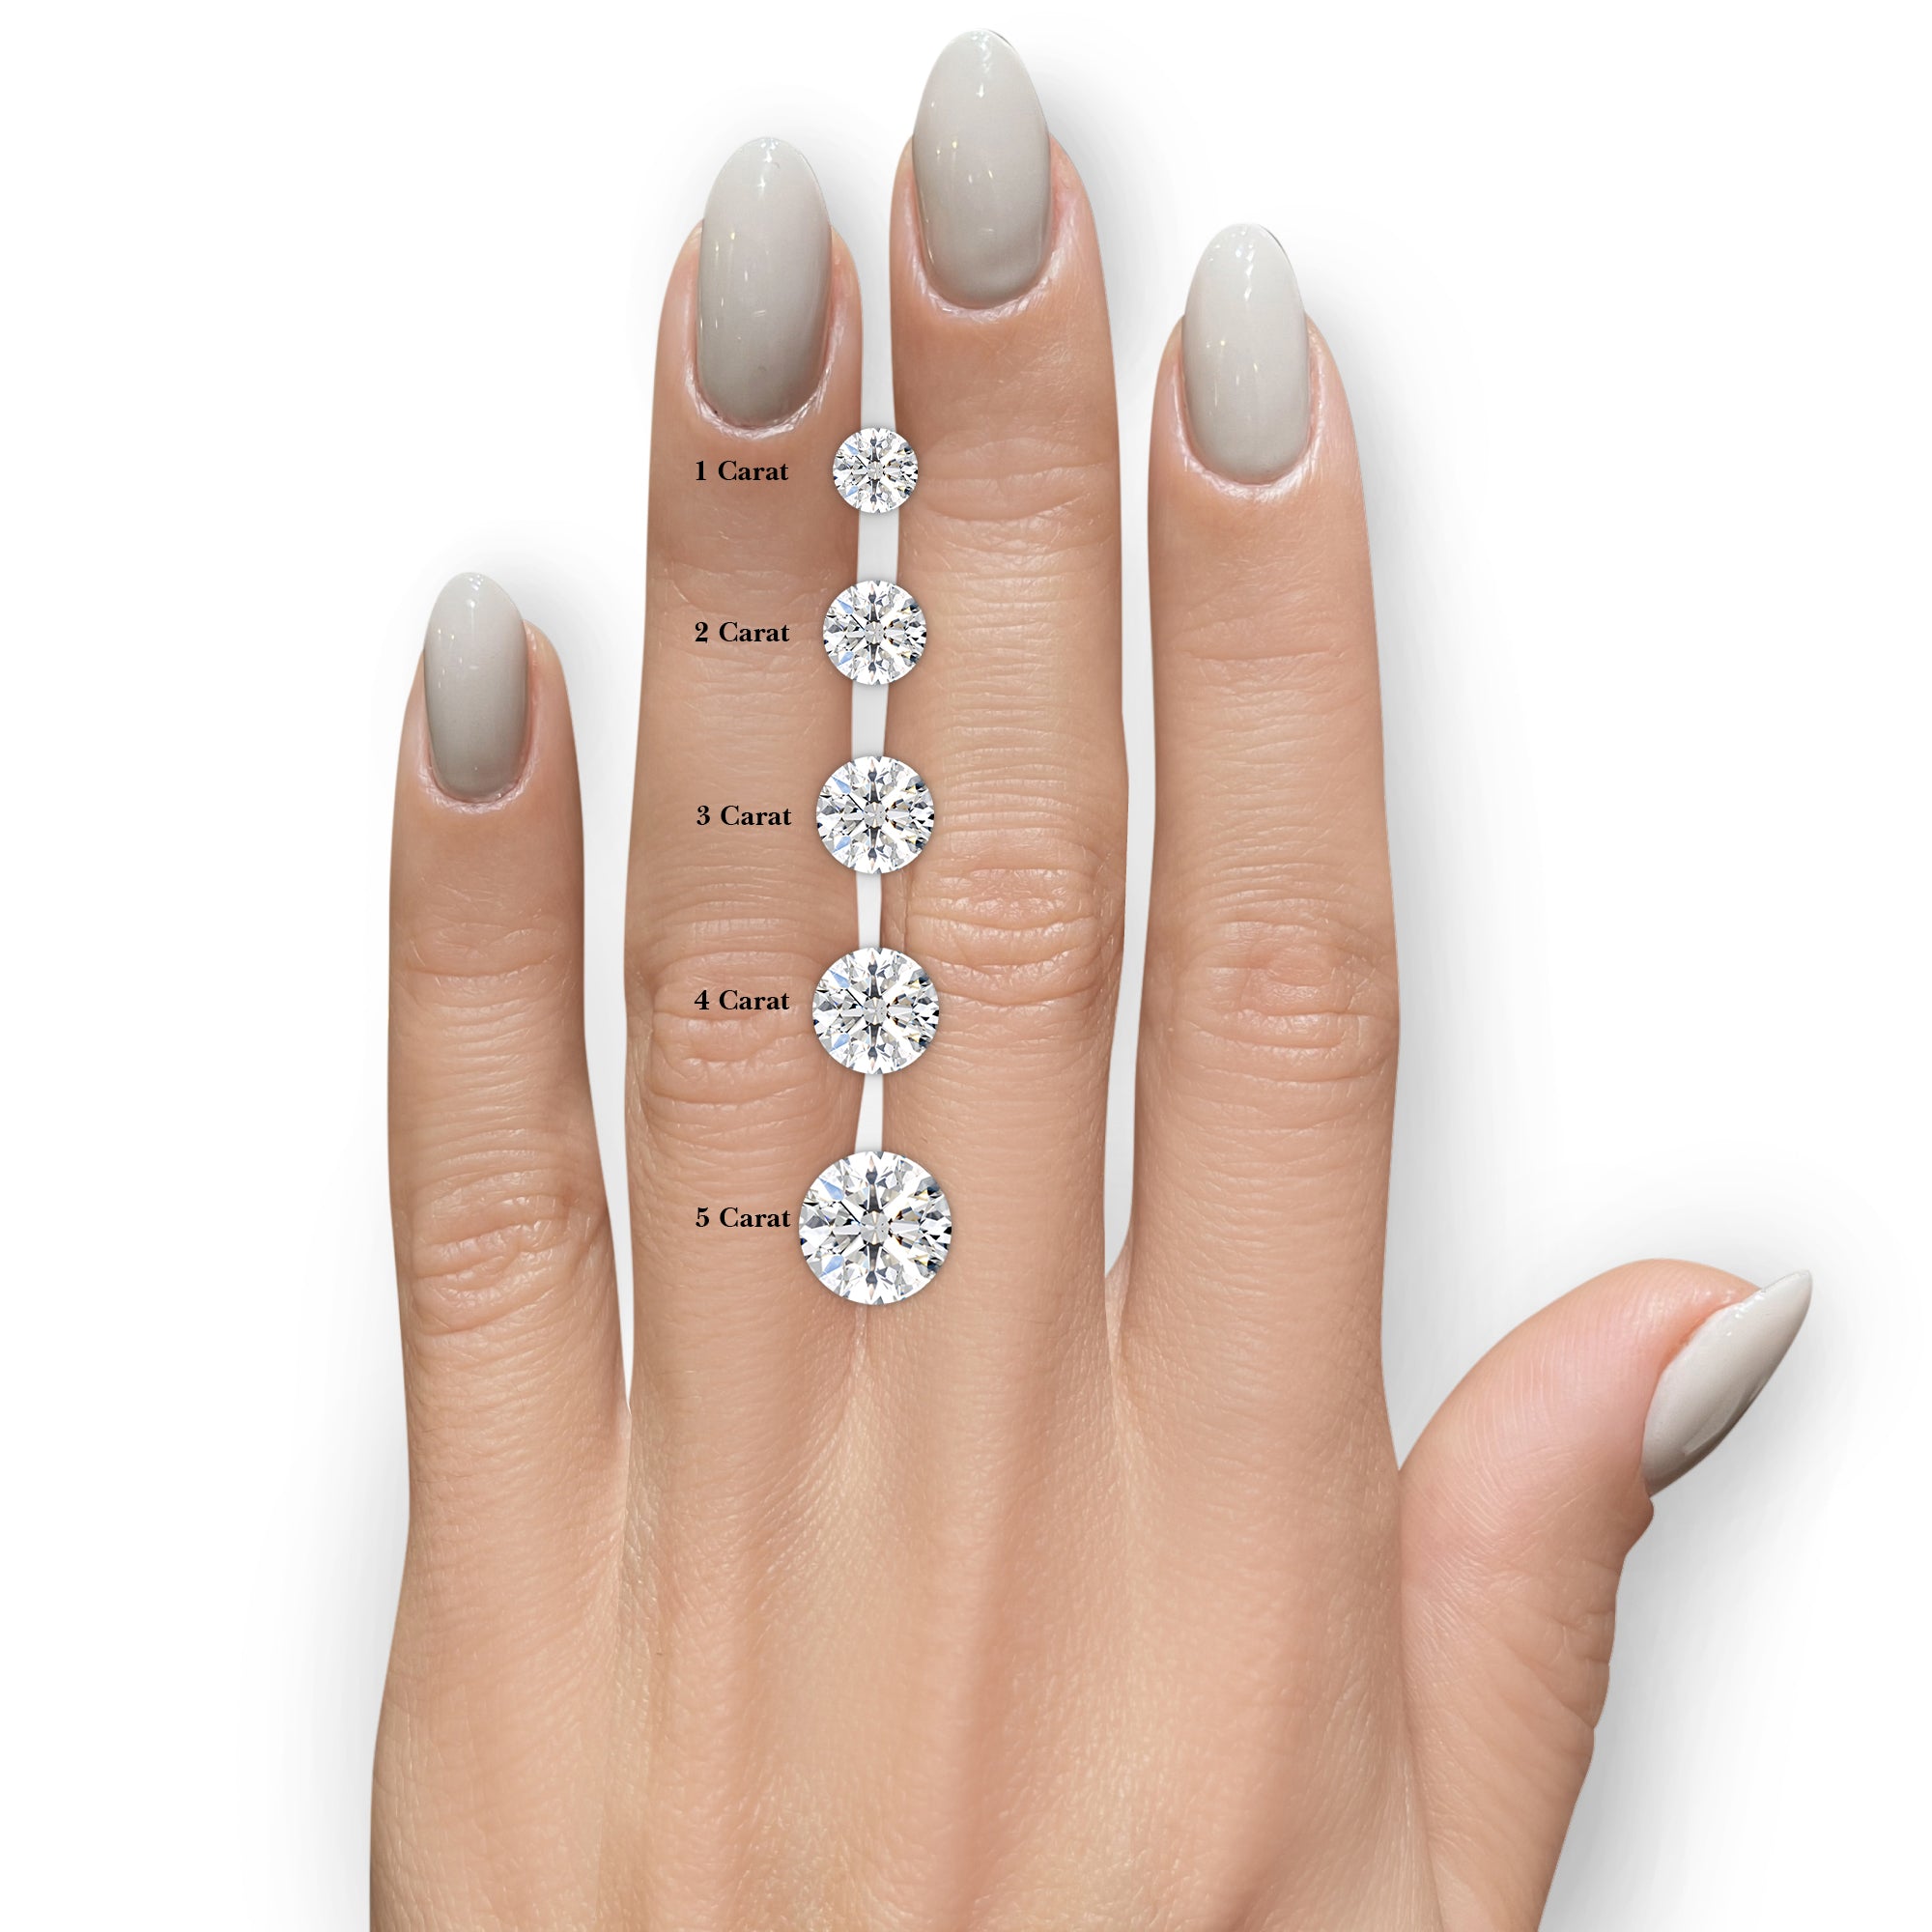 Carmen Diamond Engagement Ring -18K White Gold